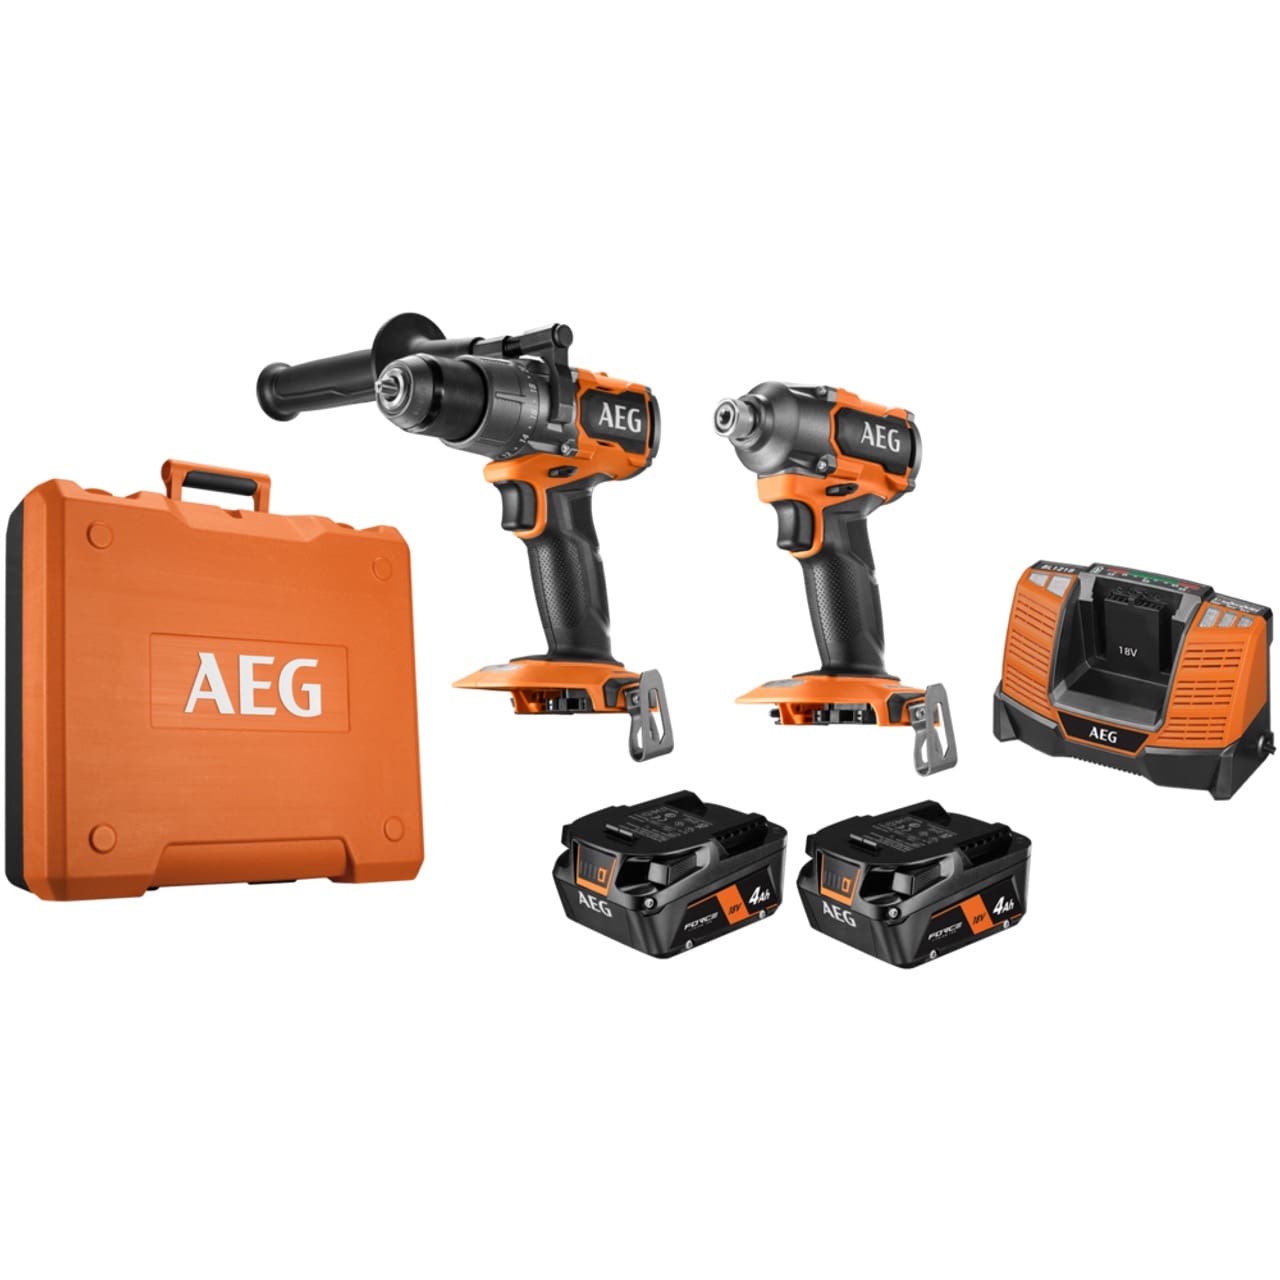 AEG tools